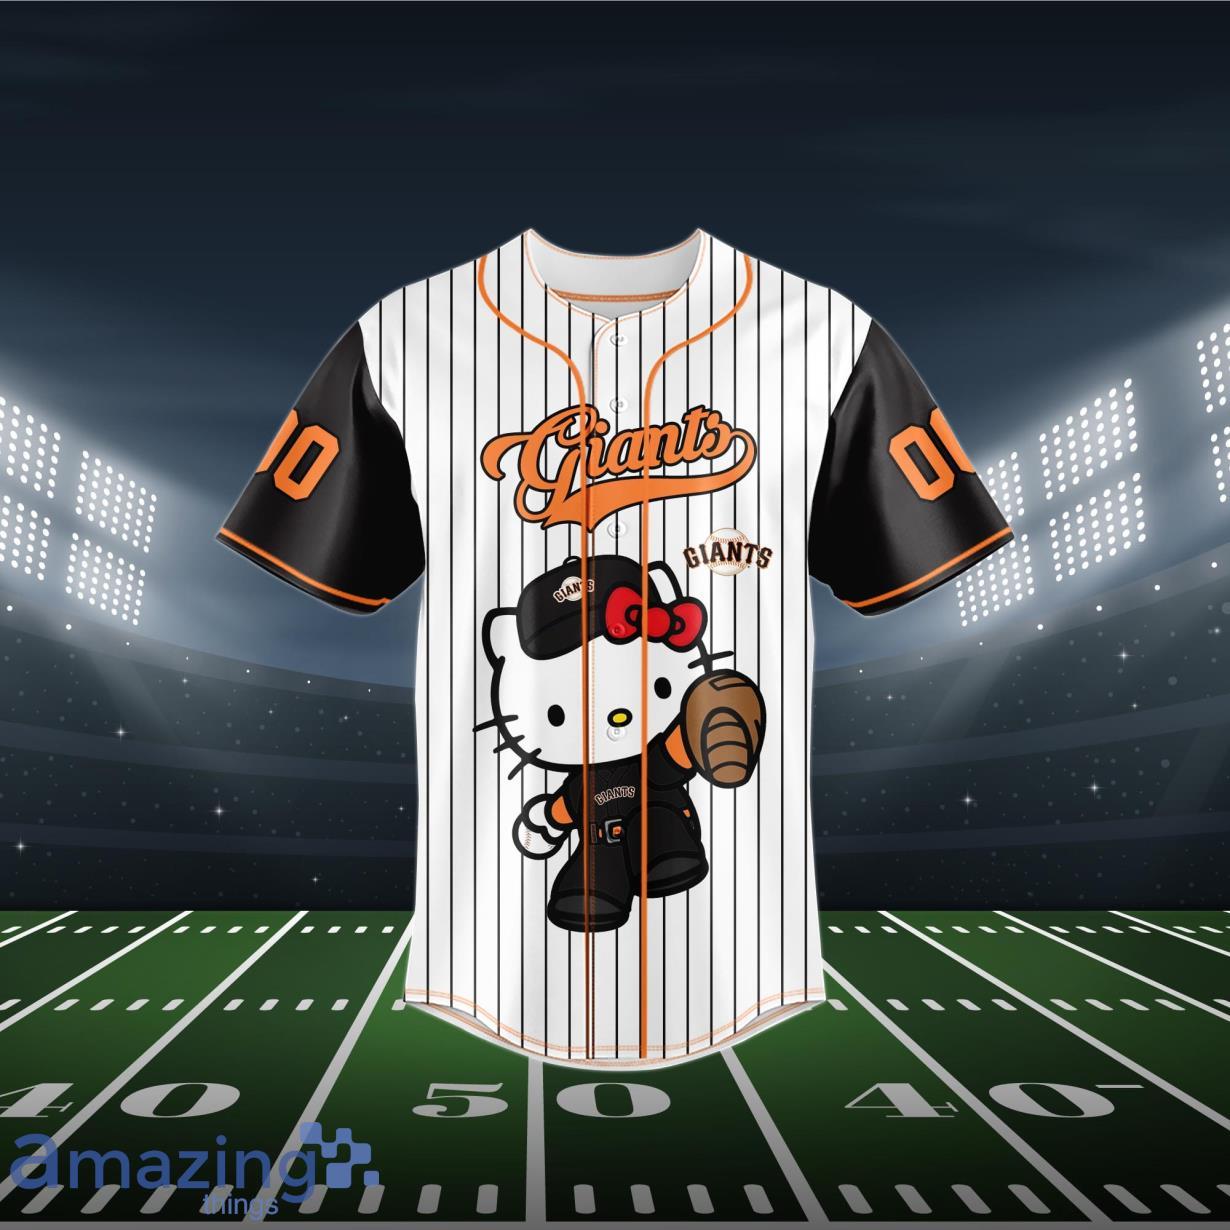 True Fan San Francisco Giants Baseball Jersey Black / Orange Size